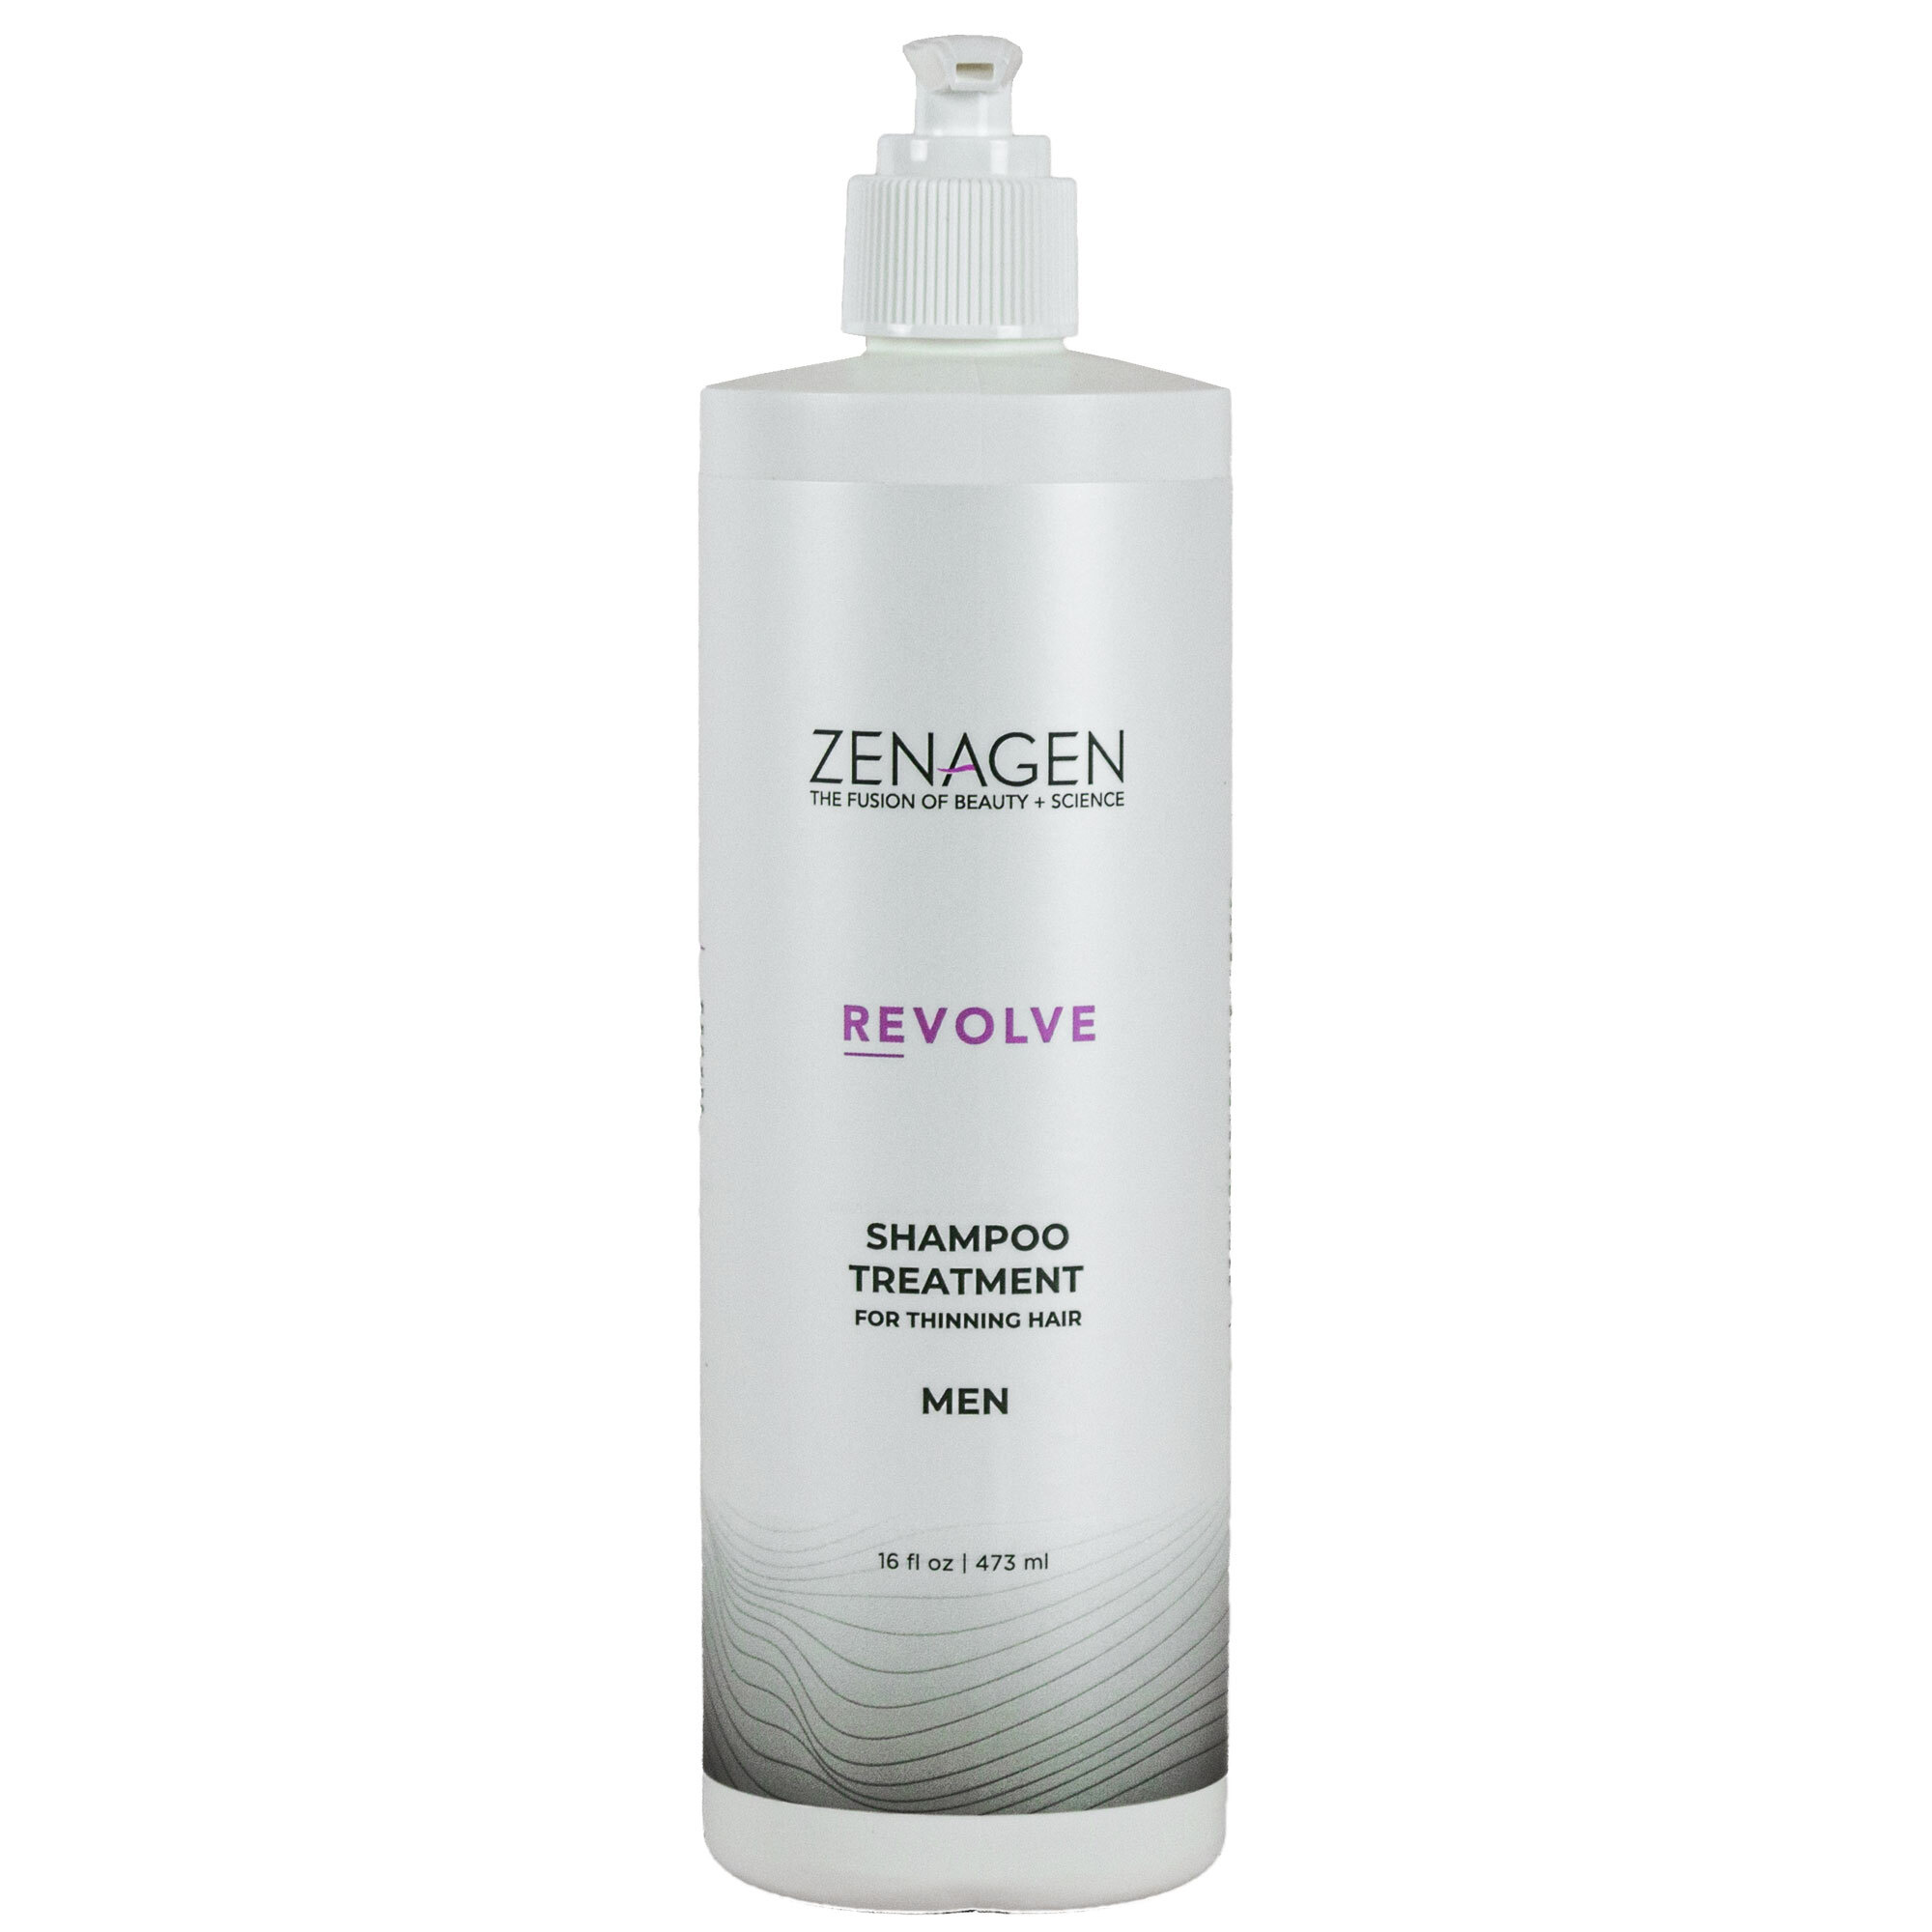 Zenagen Revolve Shampoo Treatment - Men 16oz